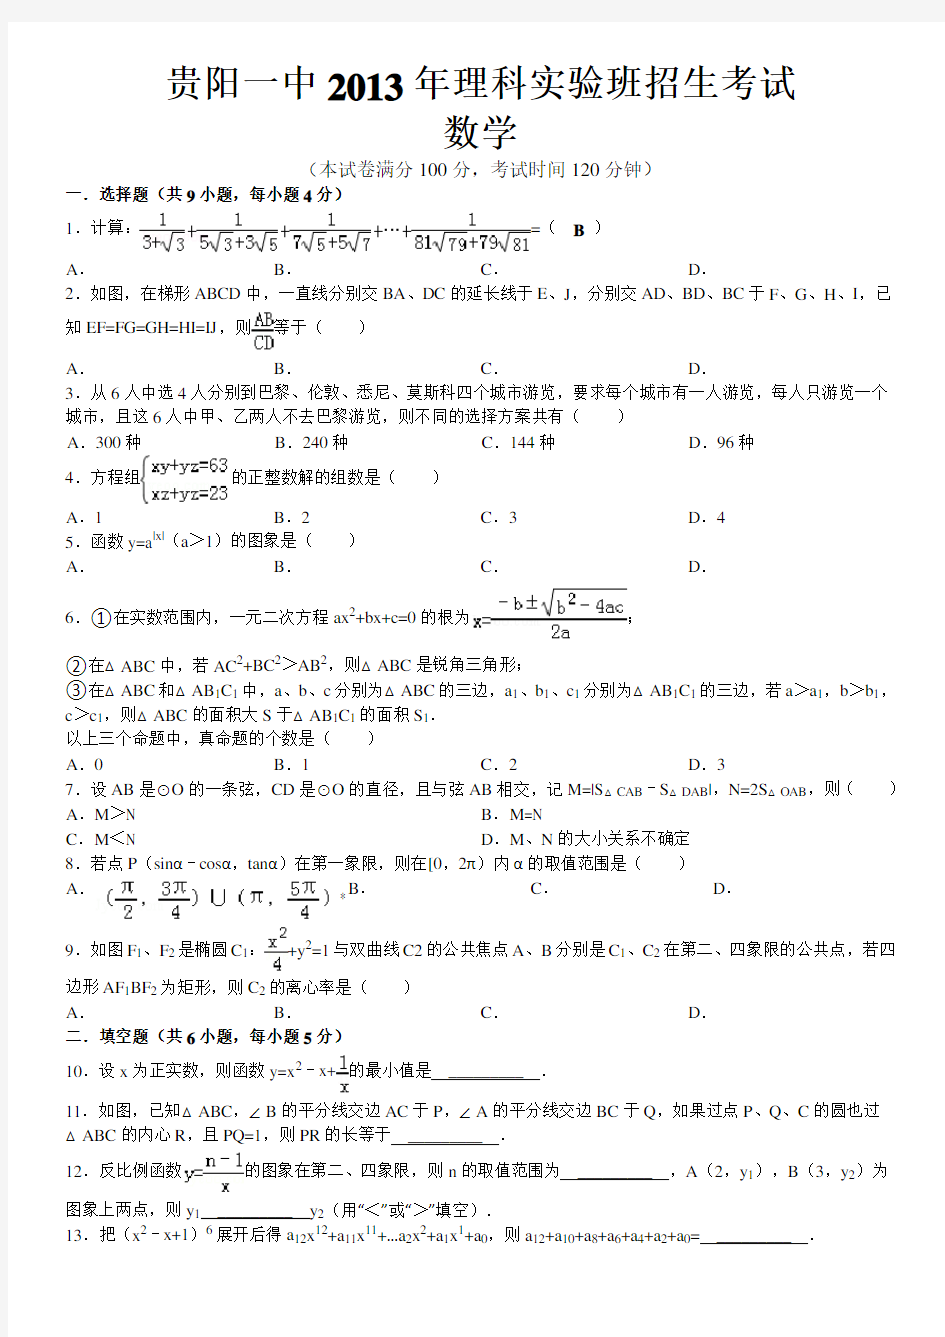 贵阳一中理科实验班招生考试数学电子版